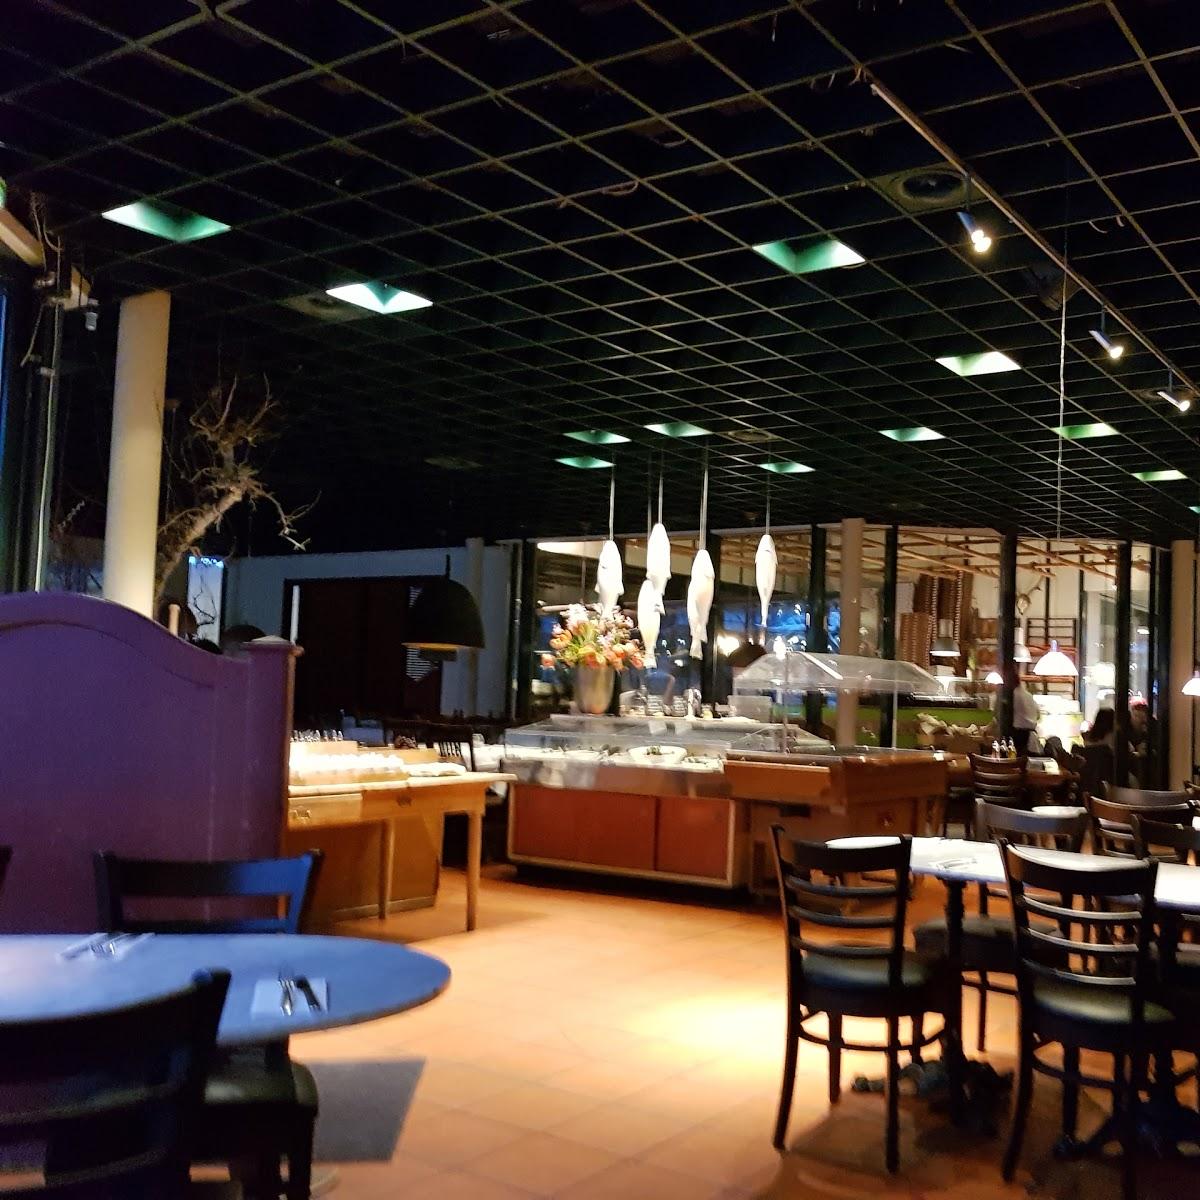 Restaurant "Ristorante Sportiva" in Planegg